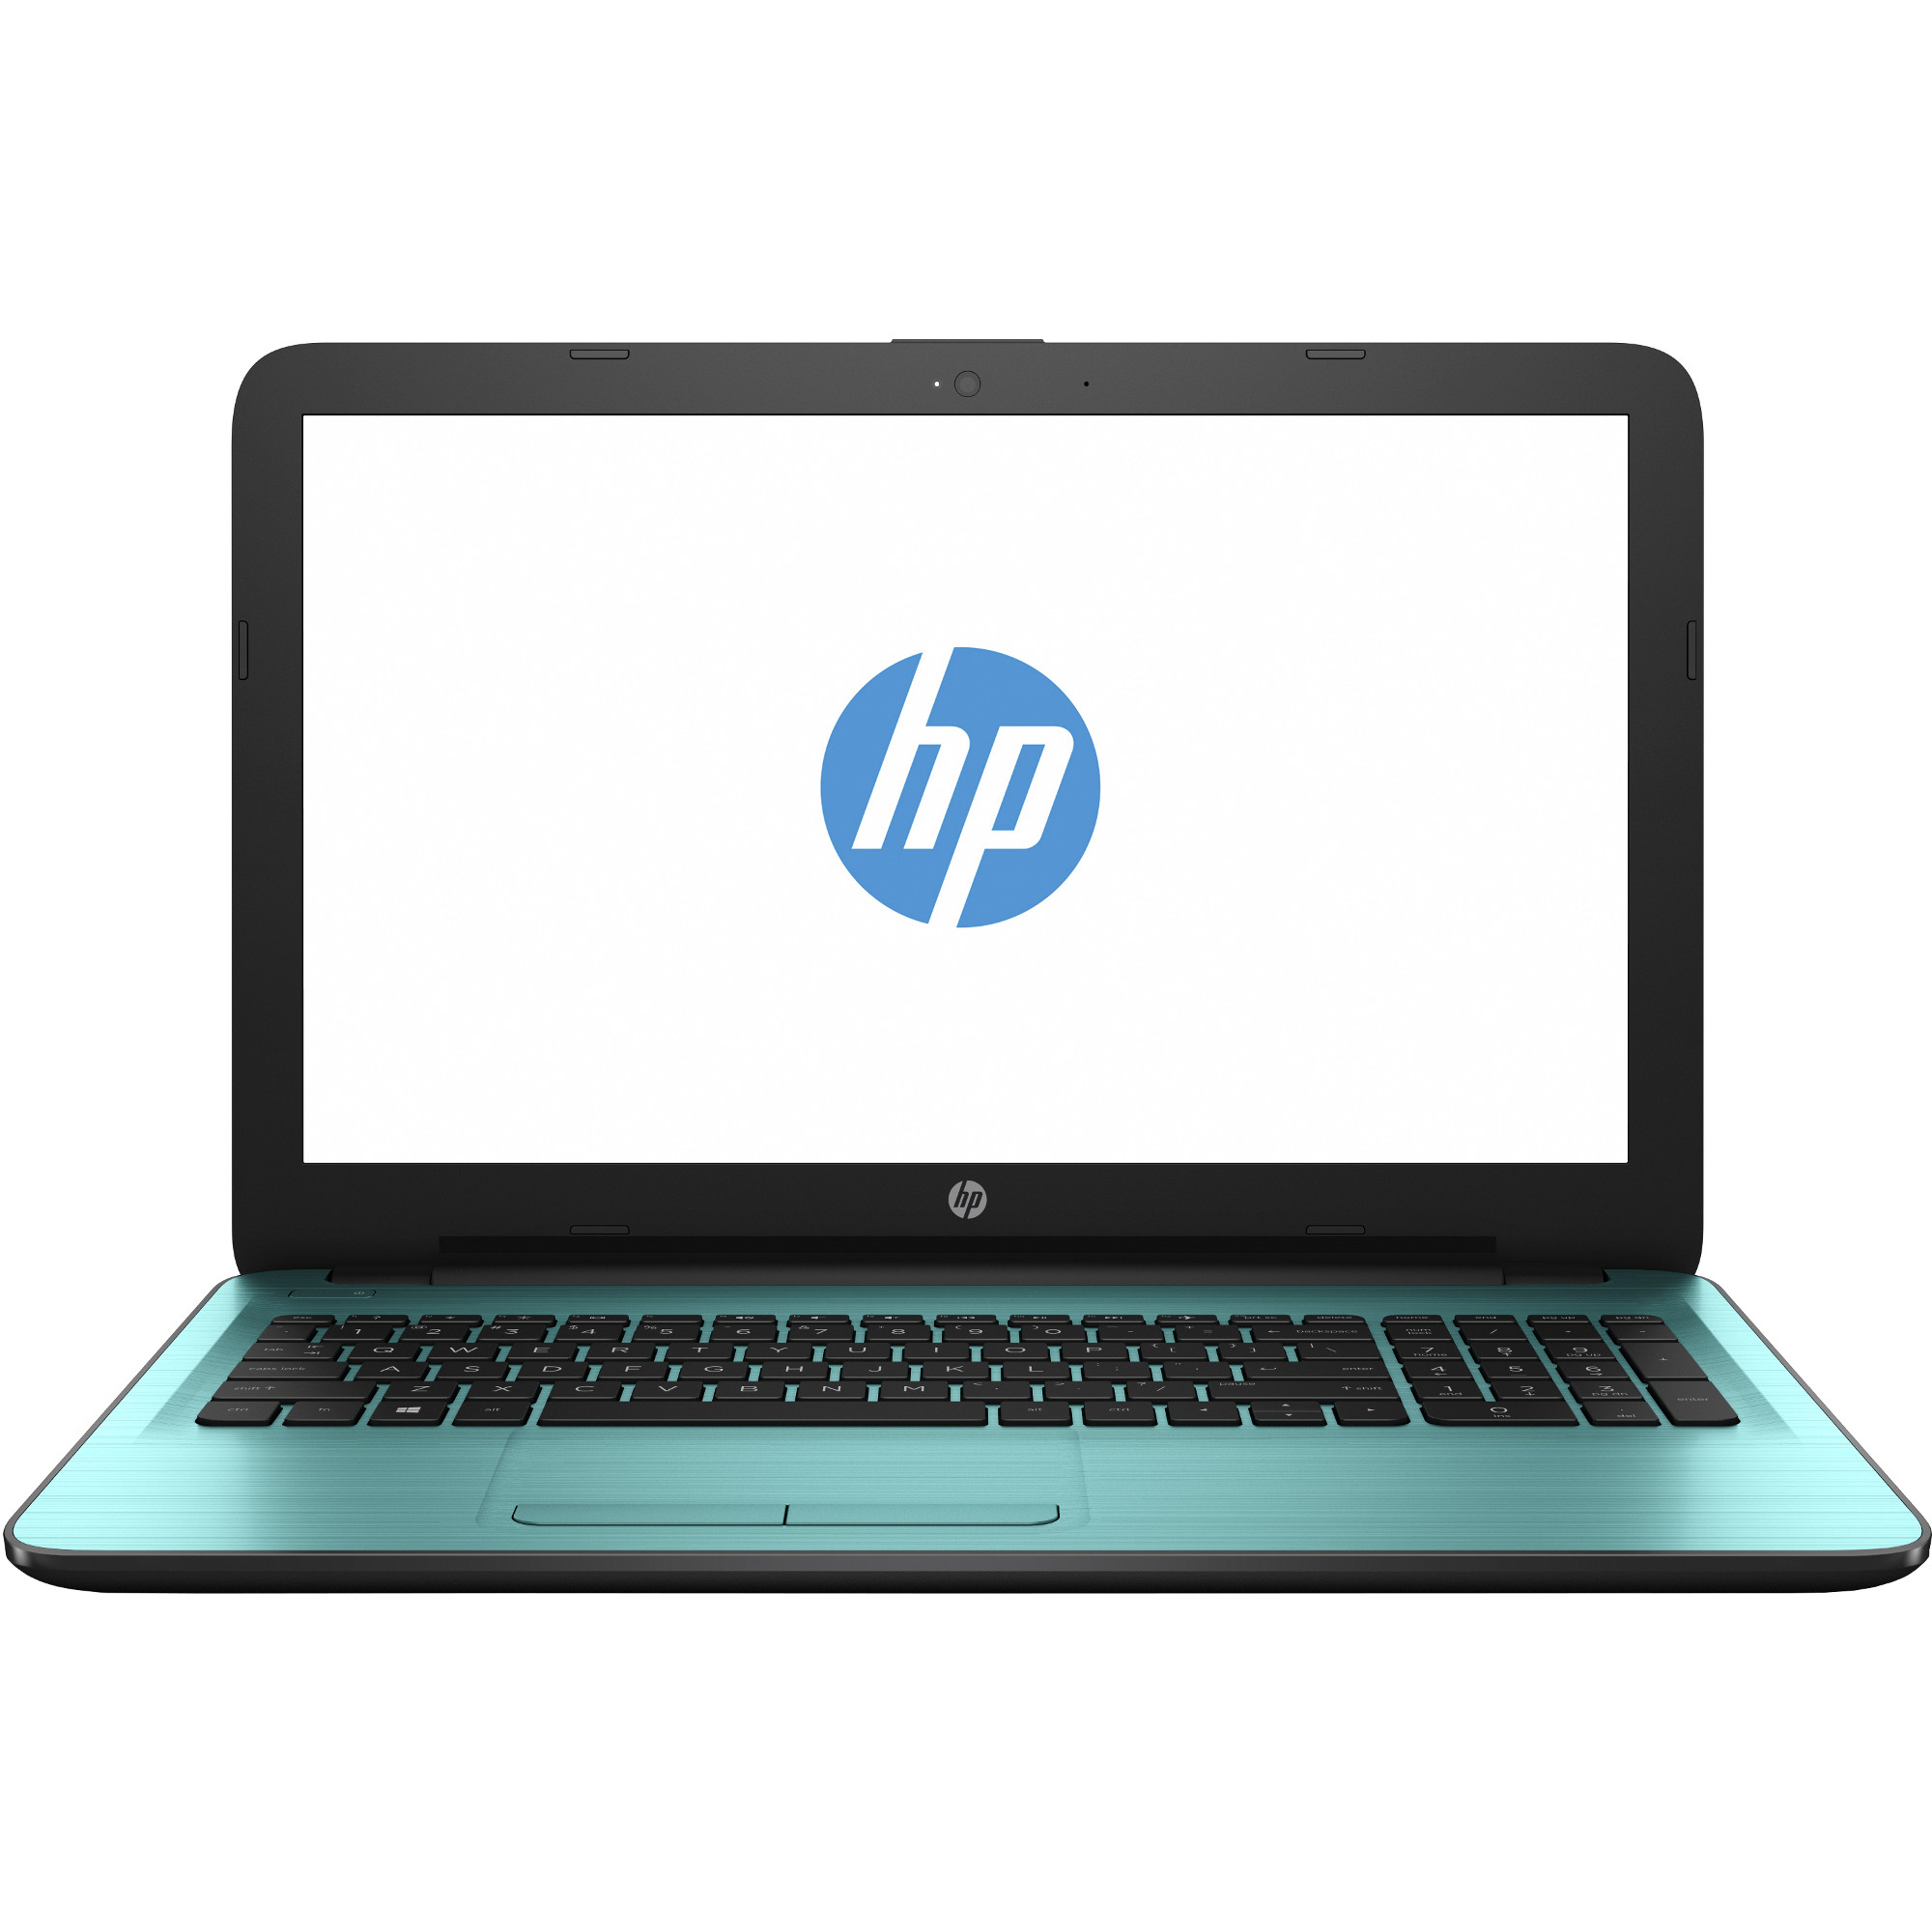 Laptop HP 15-ba004nq, AMD A8-7410, 4GB DDR3, HDD 500GB, AMD Radeon R5 M430 2GB, Free DOS